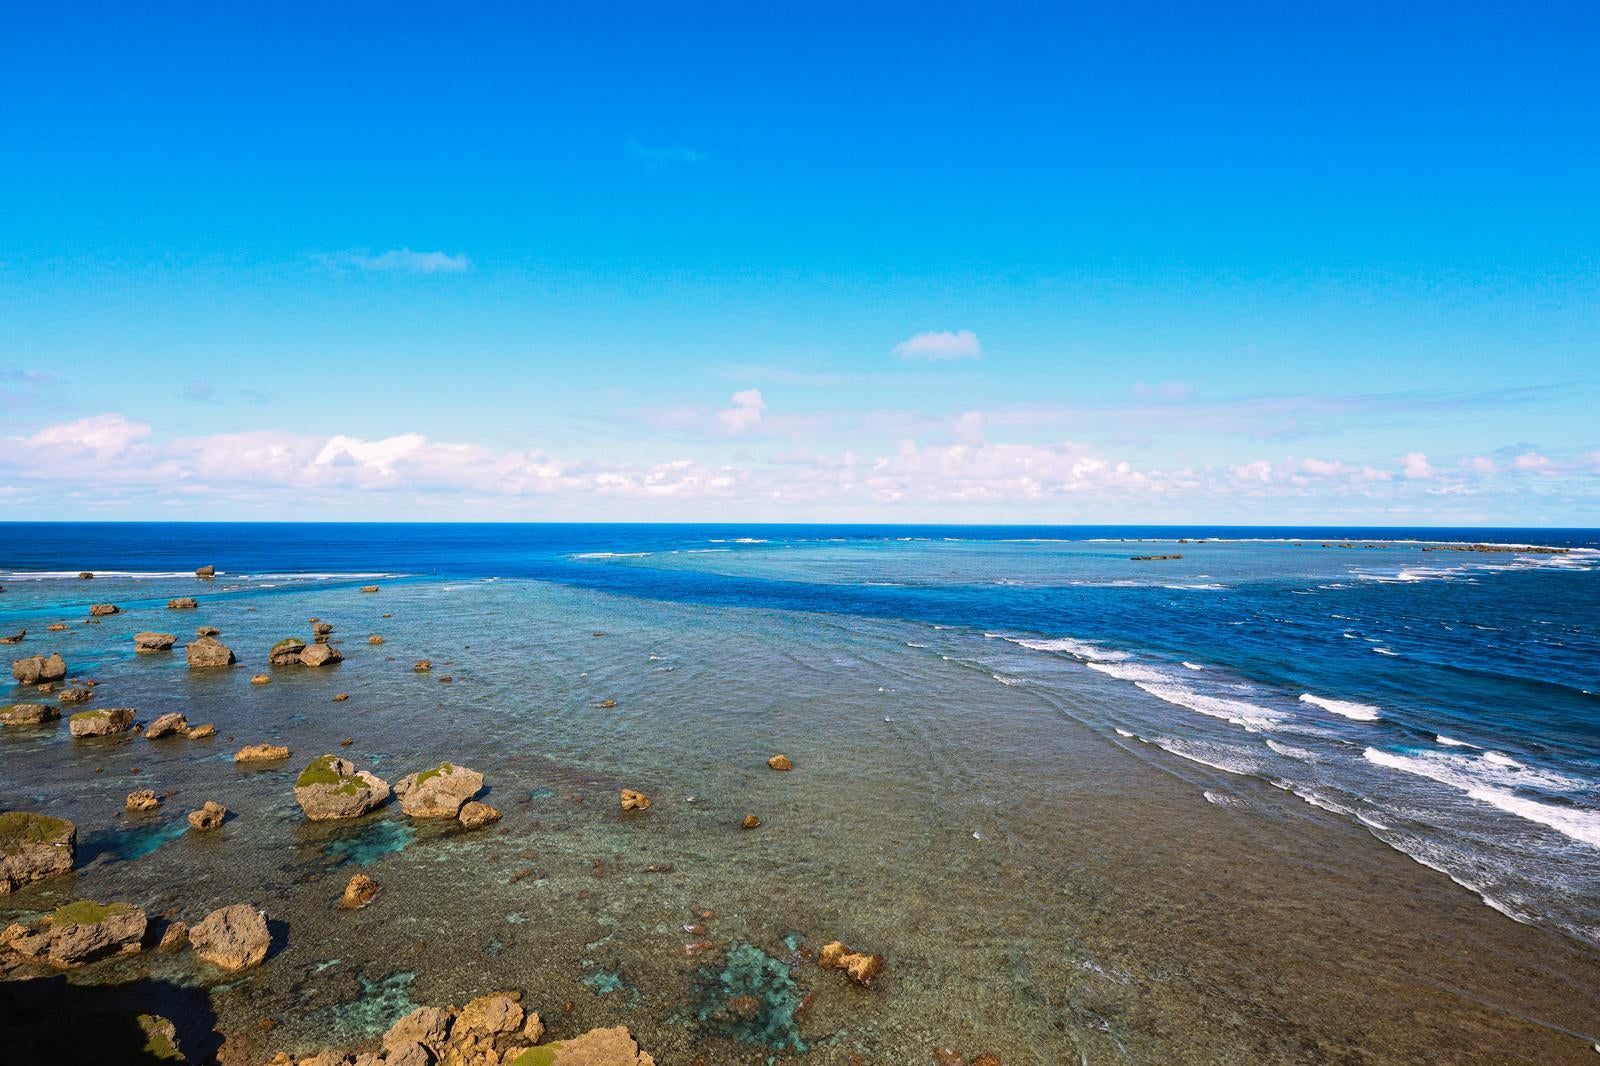 「平安名埼灯台から見える岩礁」の写真